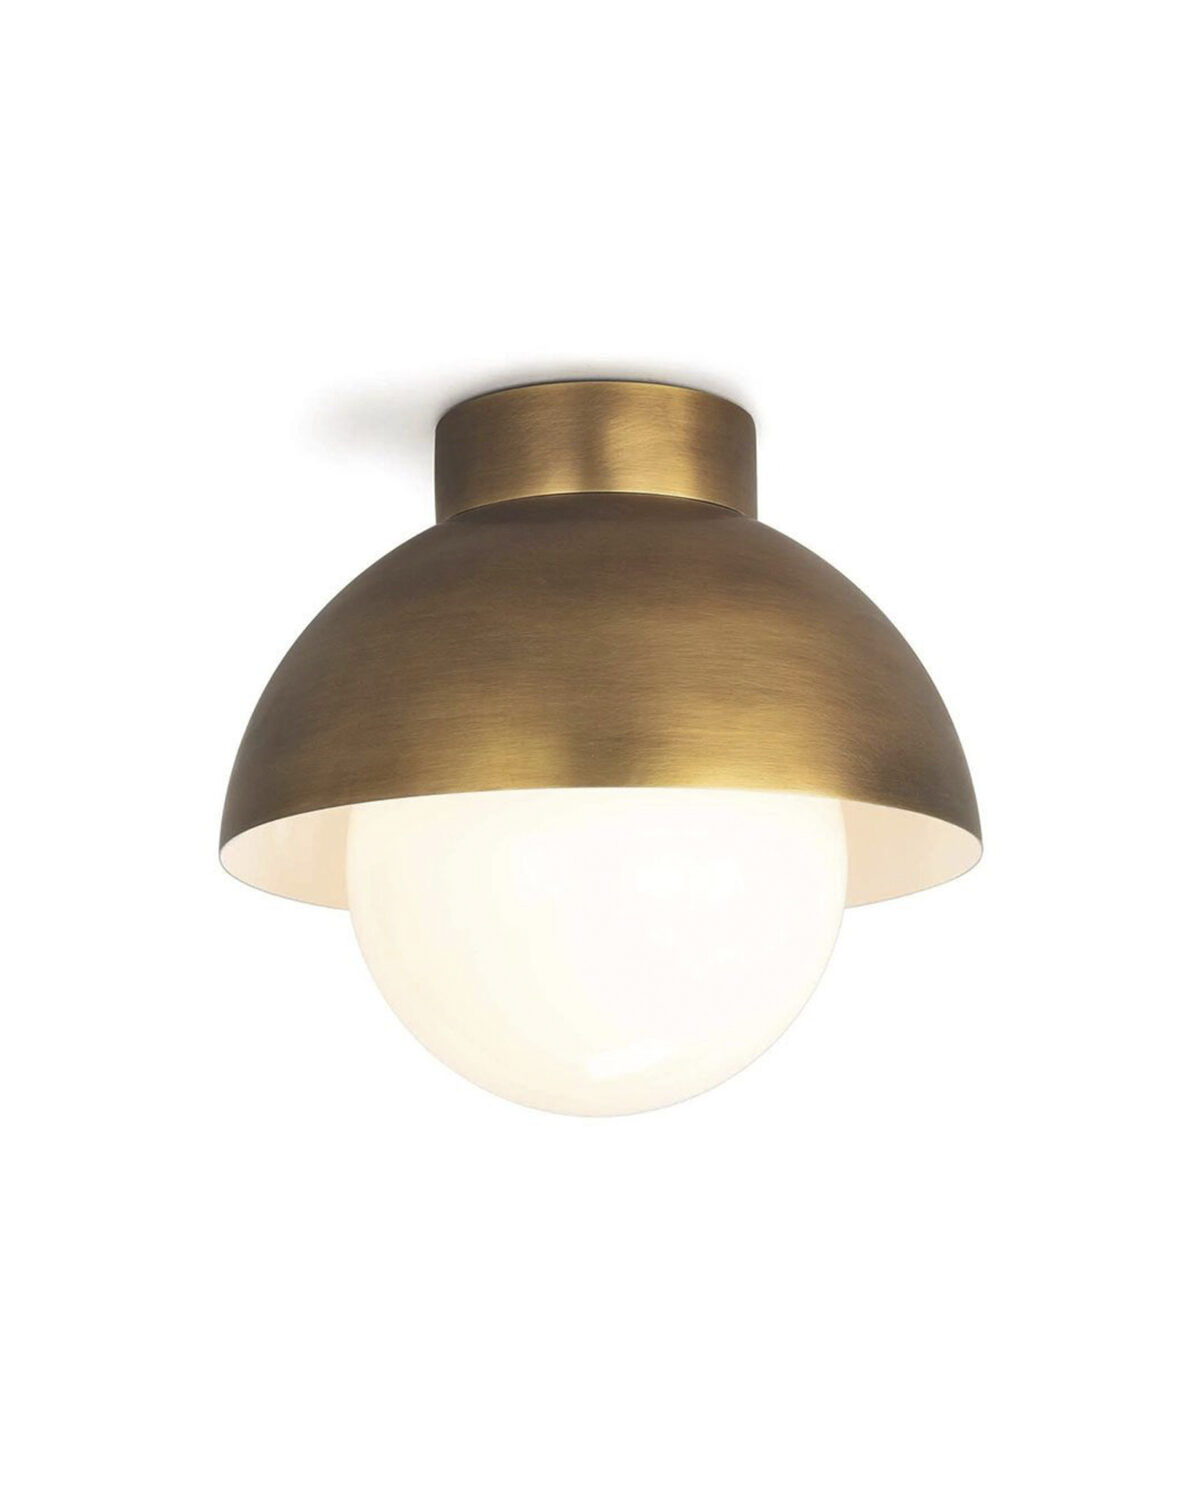 Золотой потолочный светильник "Бомон" с чашей куполообразной формы со встроенным стеклянным шаром белого цвета внутри с размерами